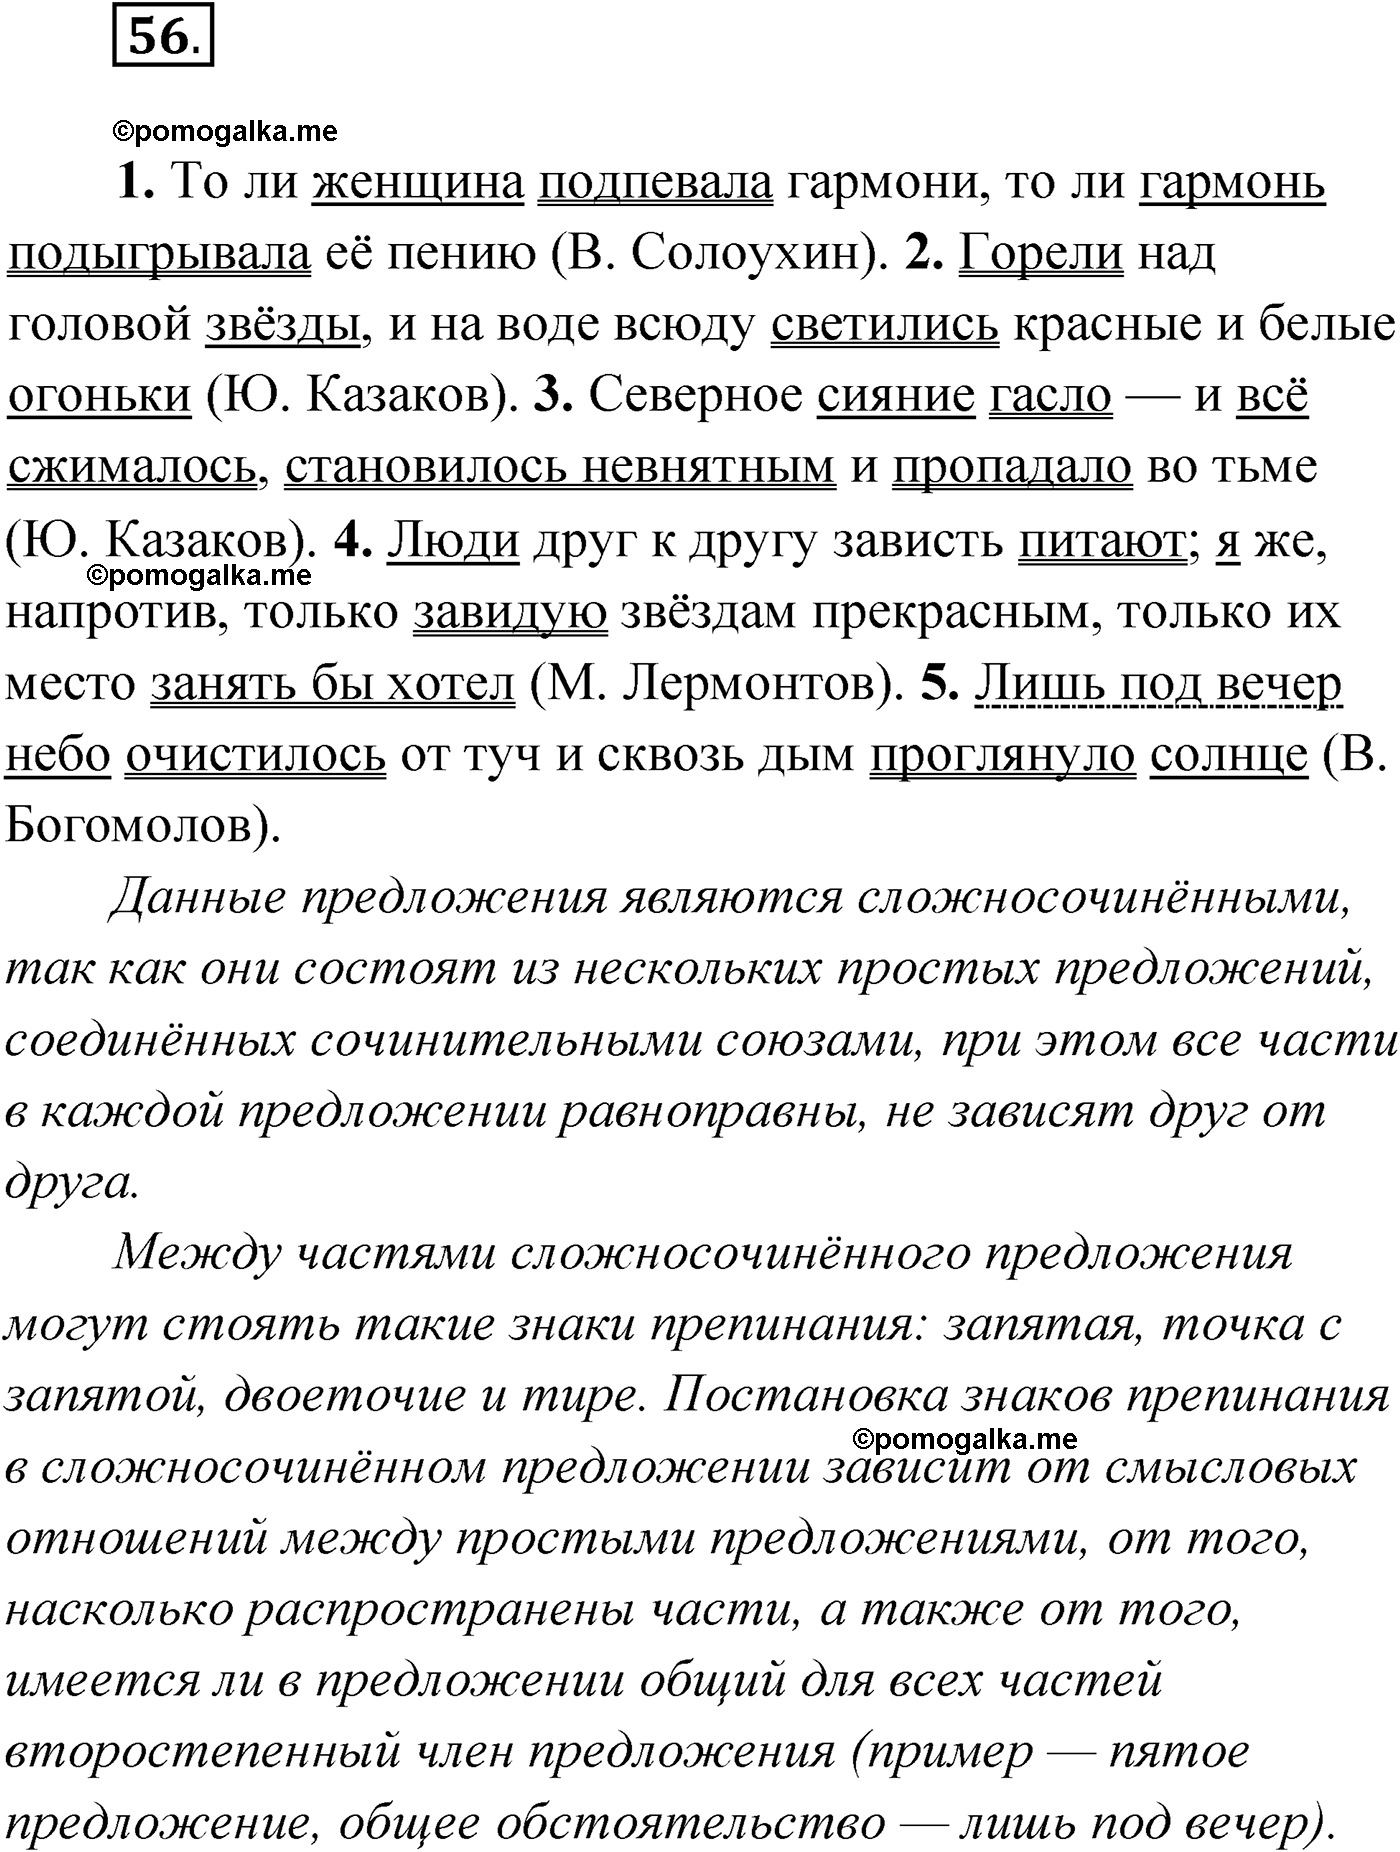 упражнение №56 русский язык 9 класс Мурина 2019 год